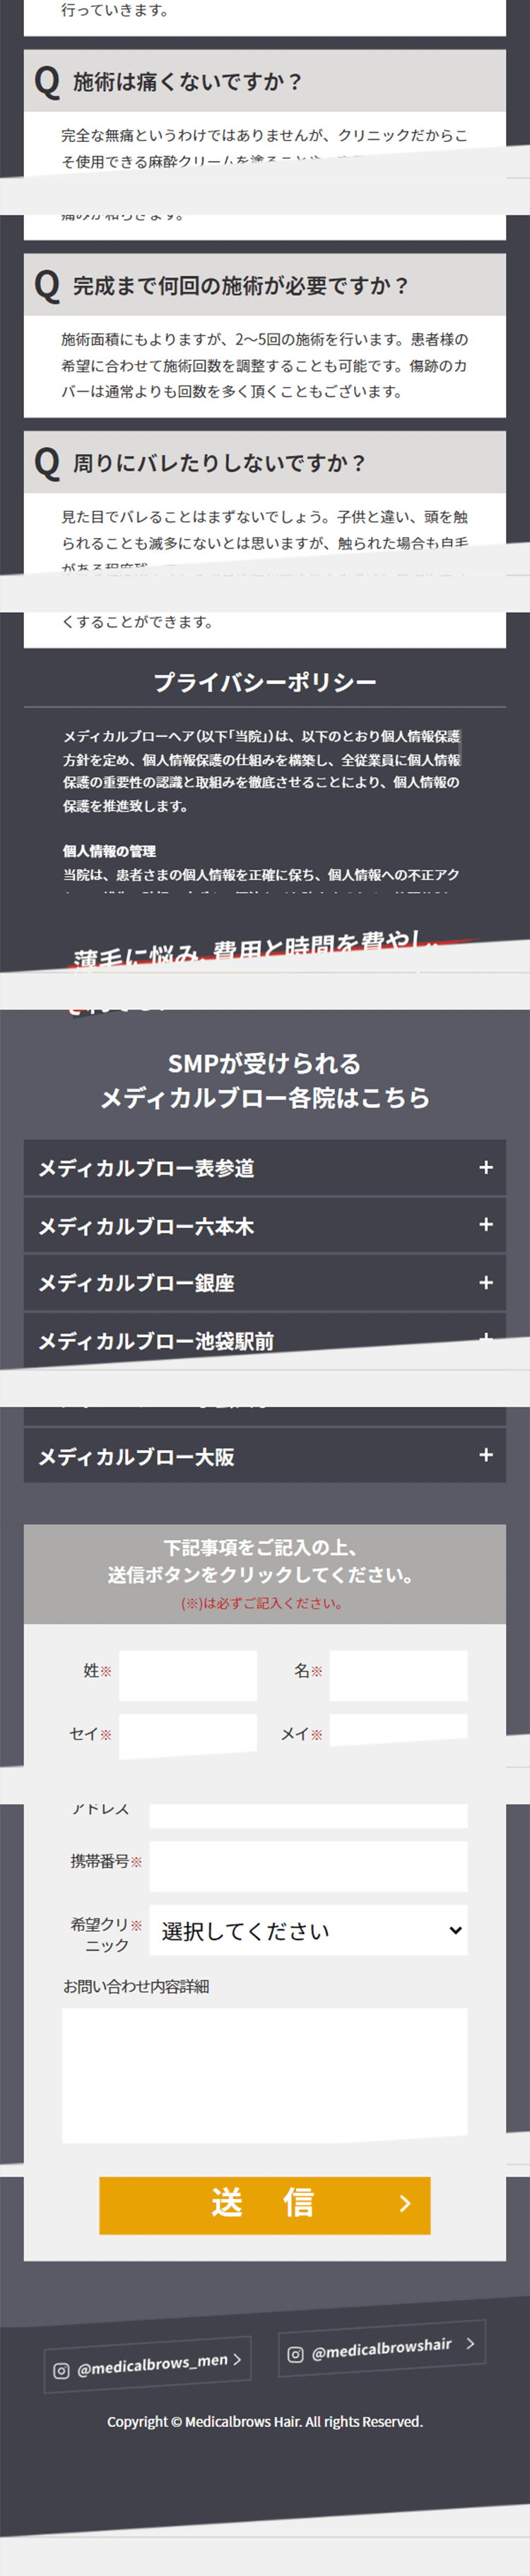 SMP施術_sp_2